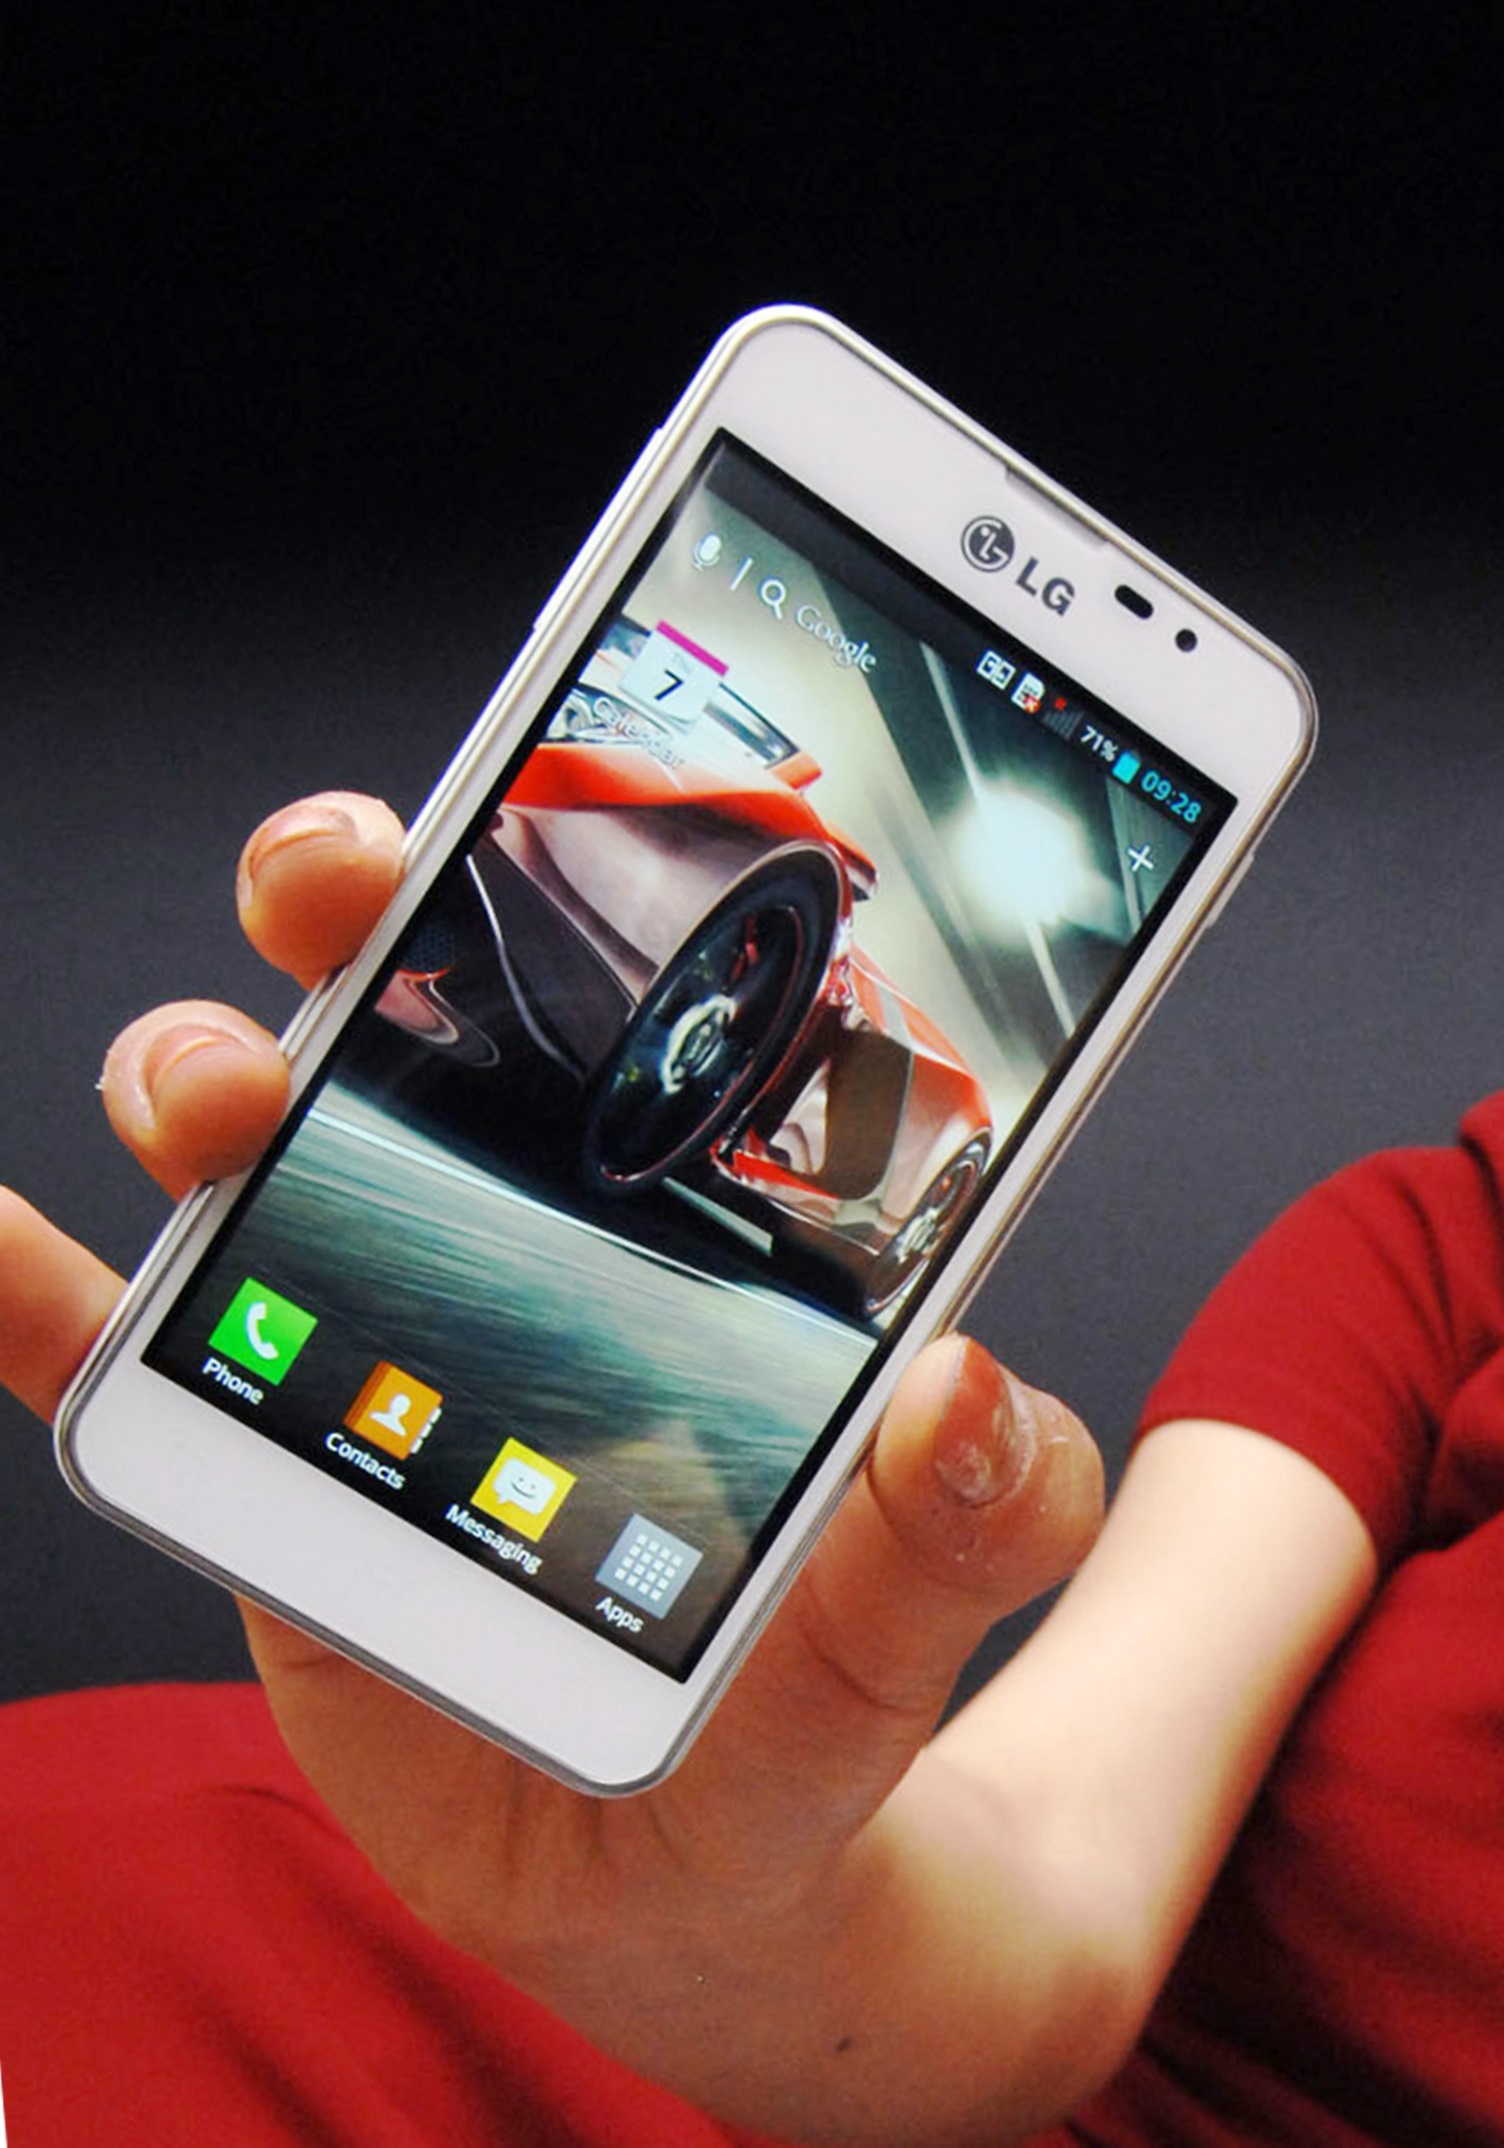 Смартфон LG Optimus F5